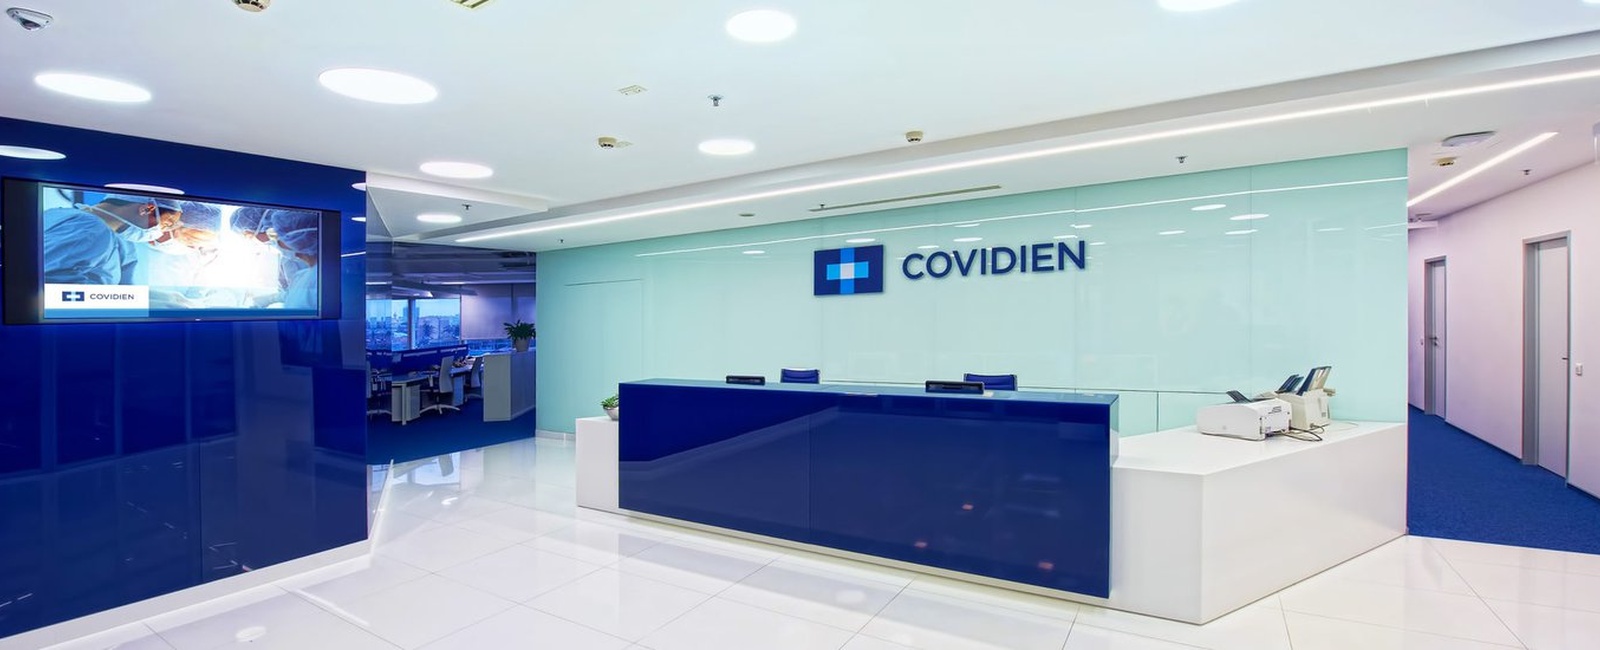 Создание комплекса мультимедиа систем для нового офиса Covidien